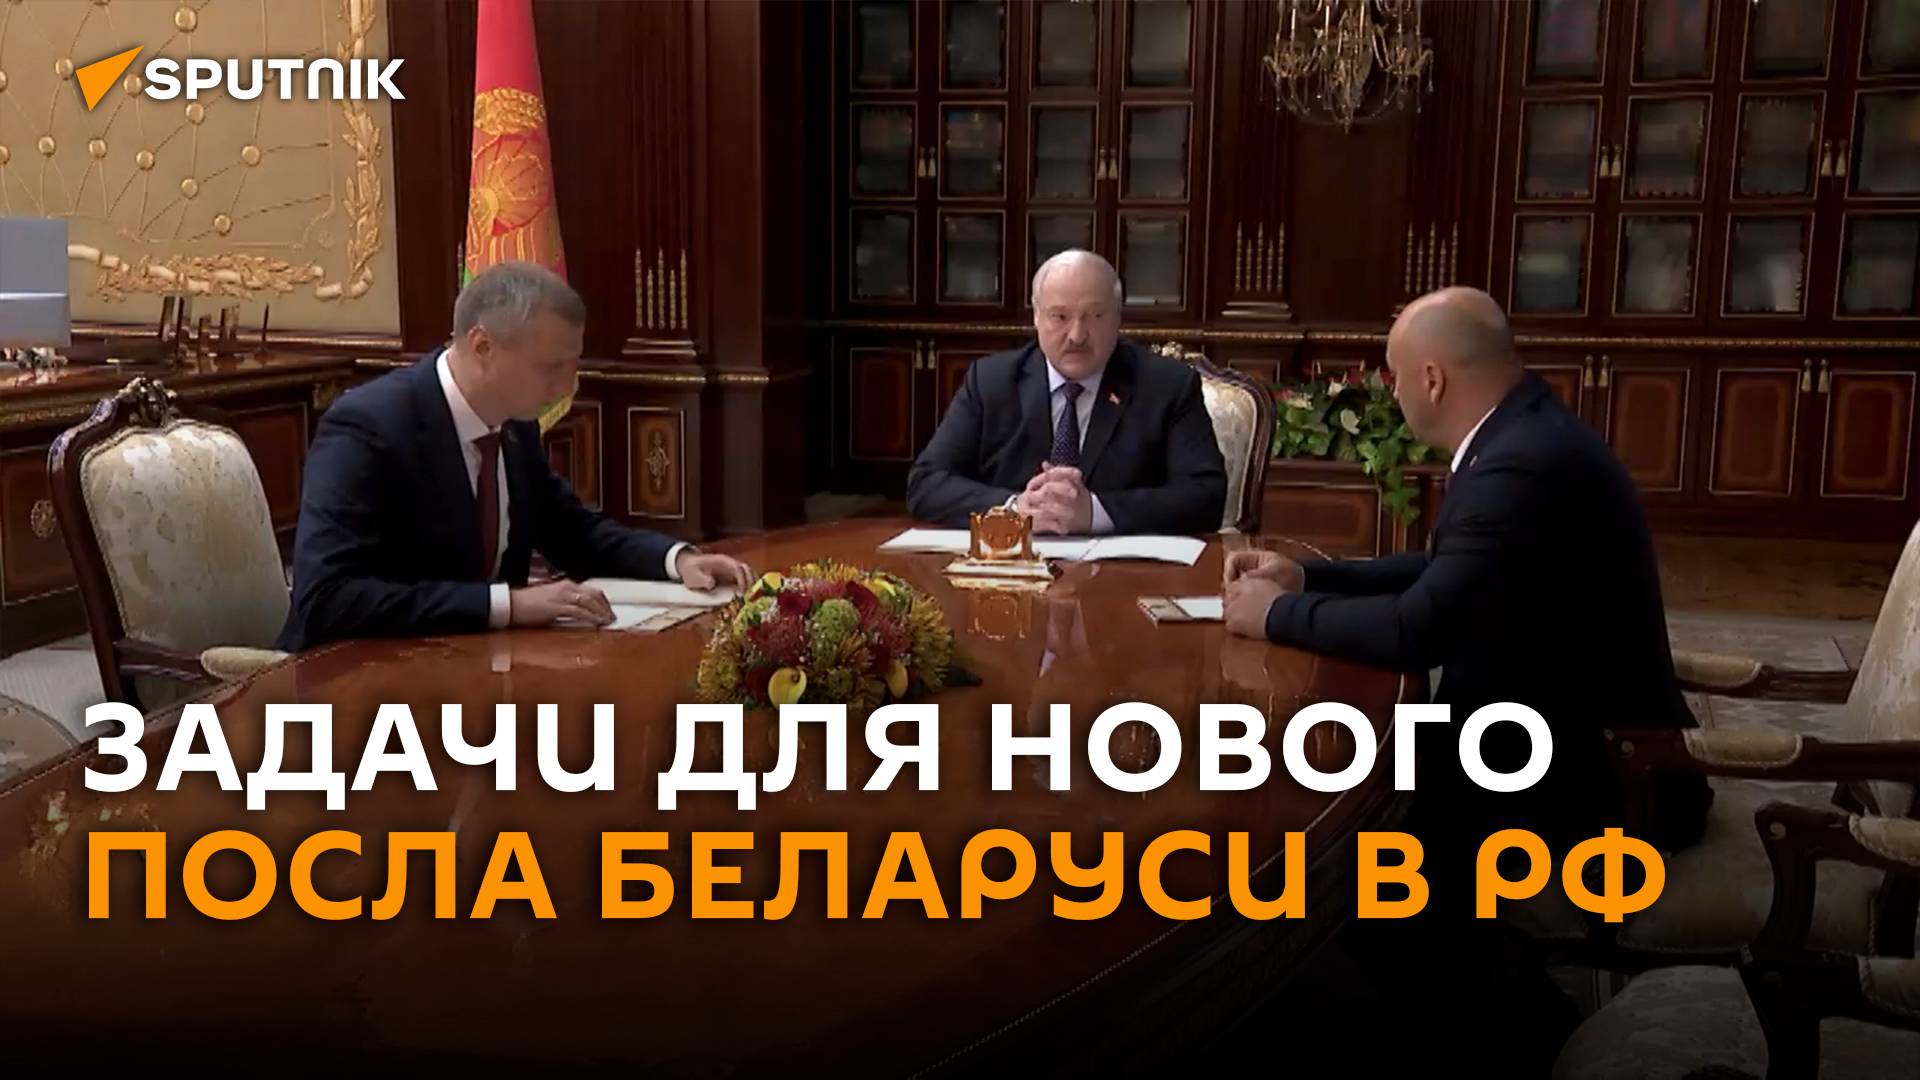 Лукашенко обозначил приоритеты для нового посла Беларуси в РФ